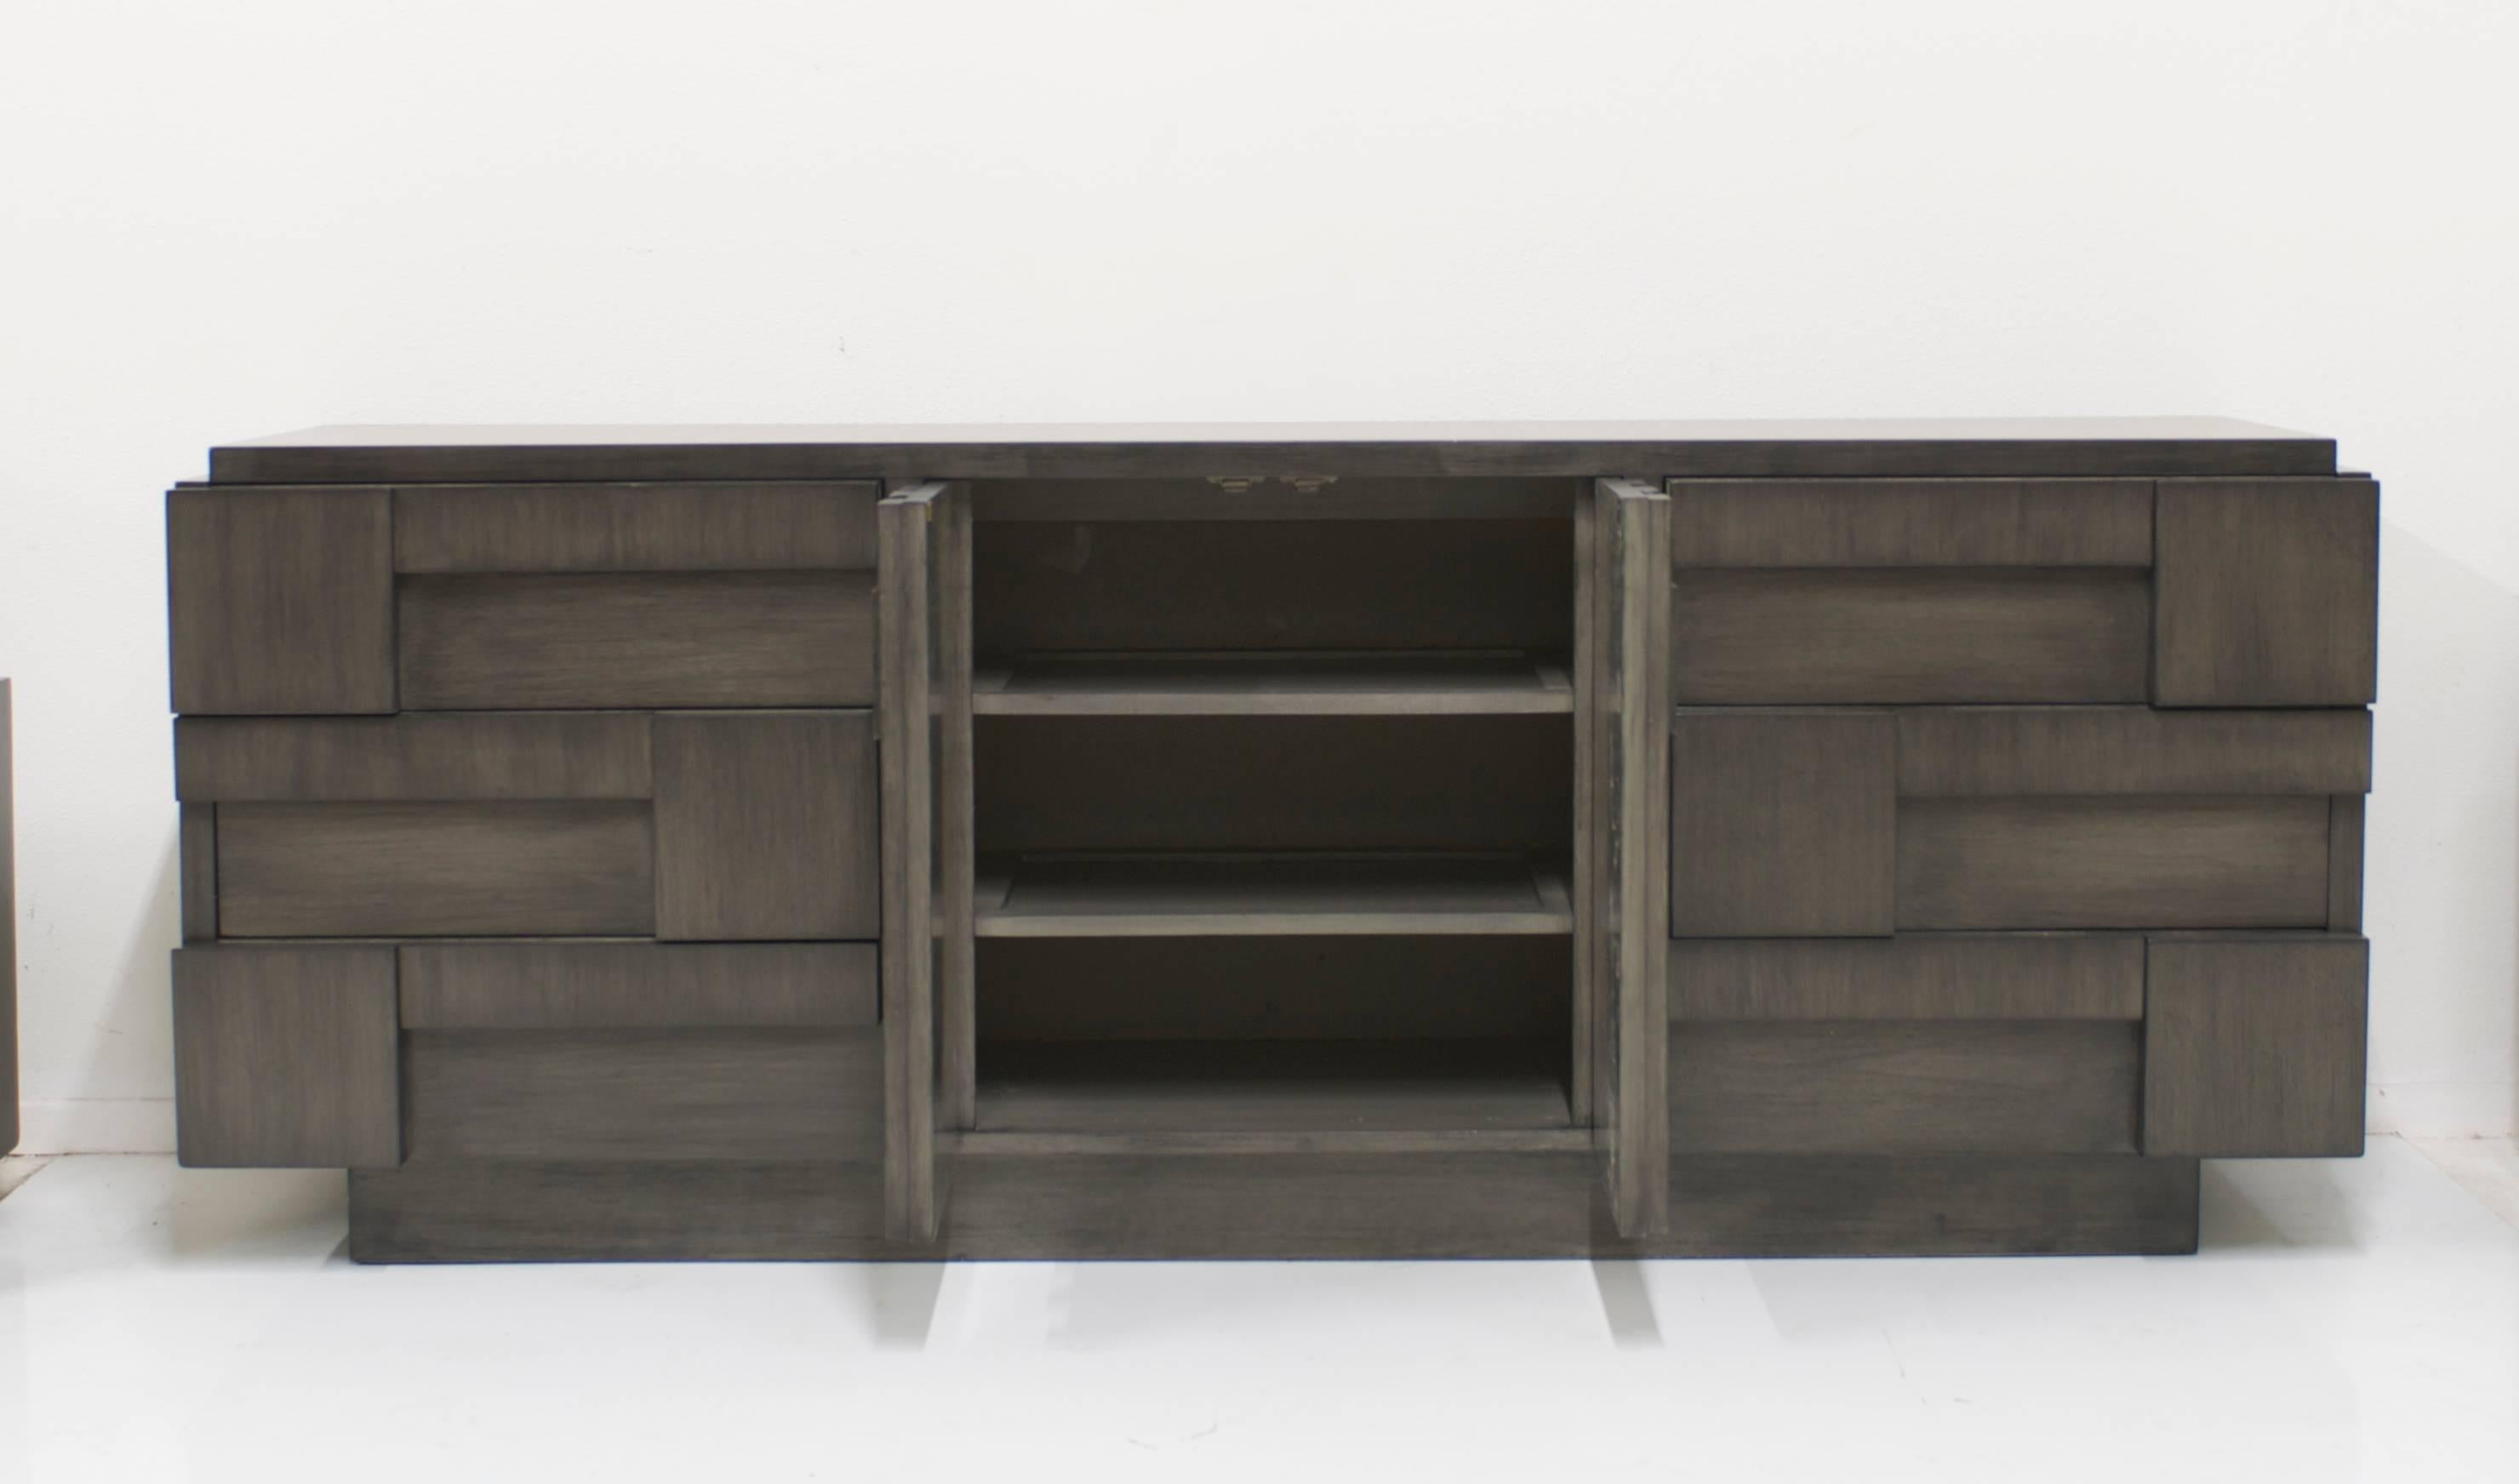 American Charcoal Grey Brutalist Lane Cabinet or Dresser